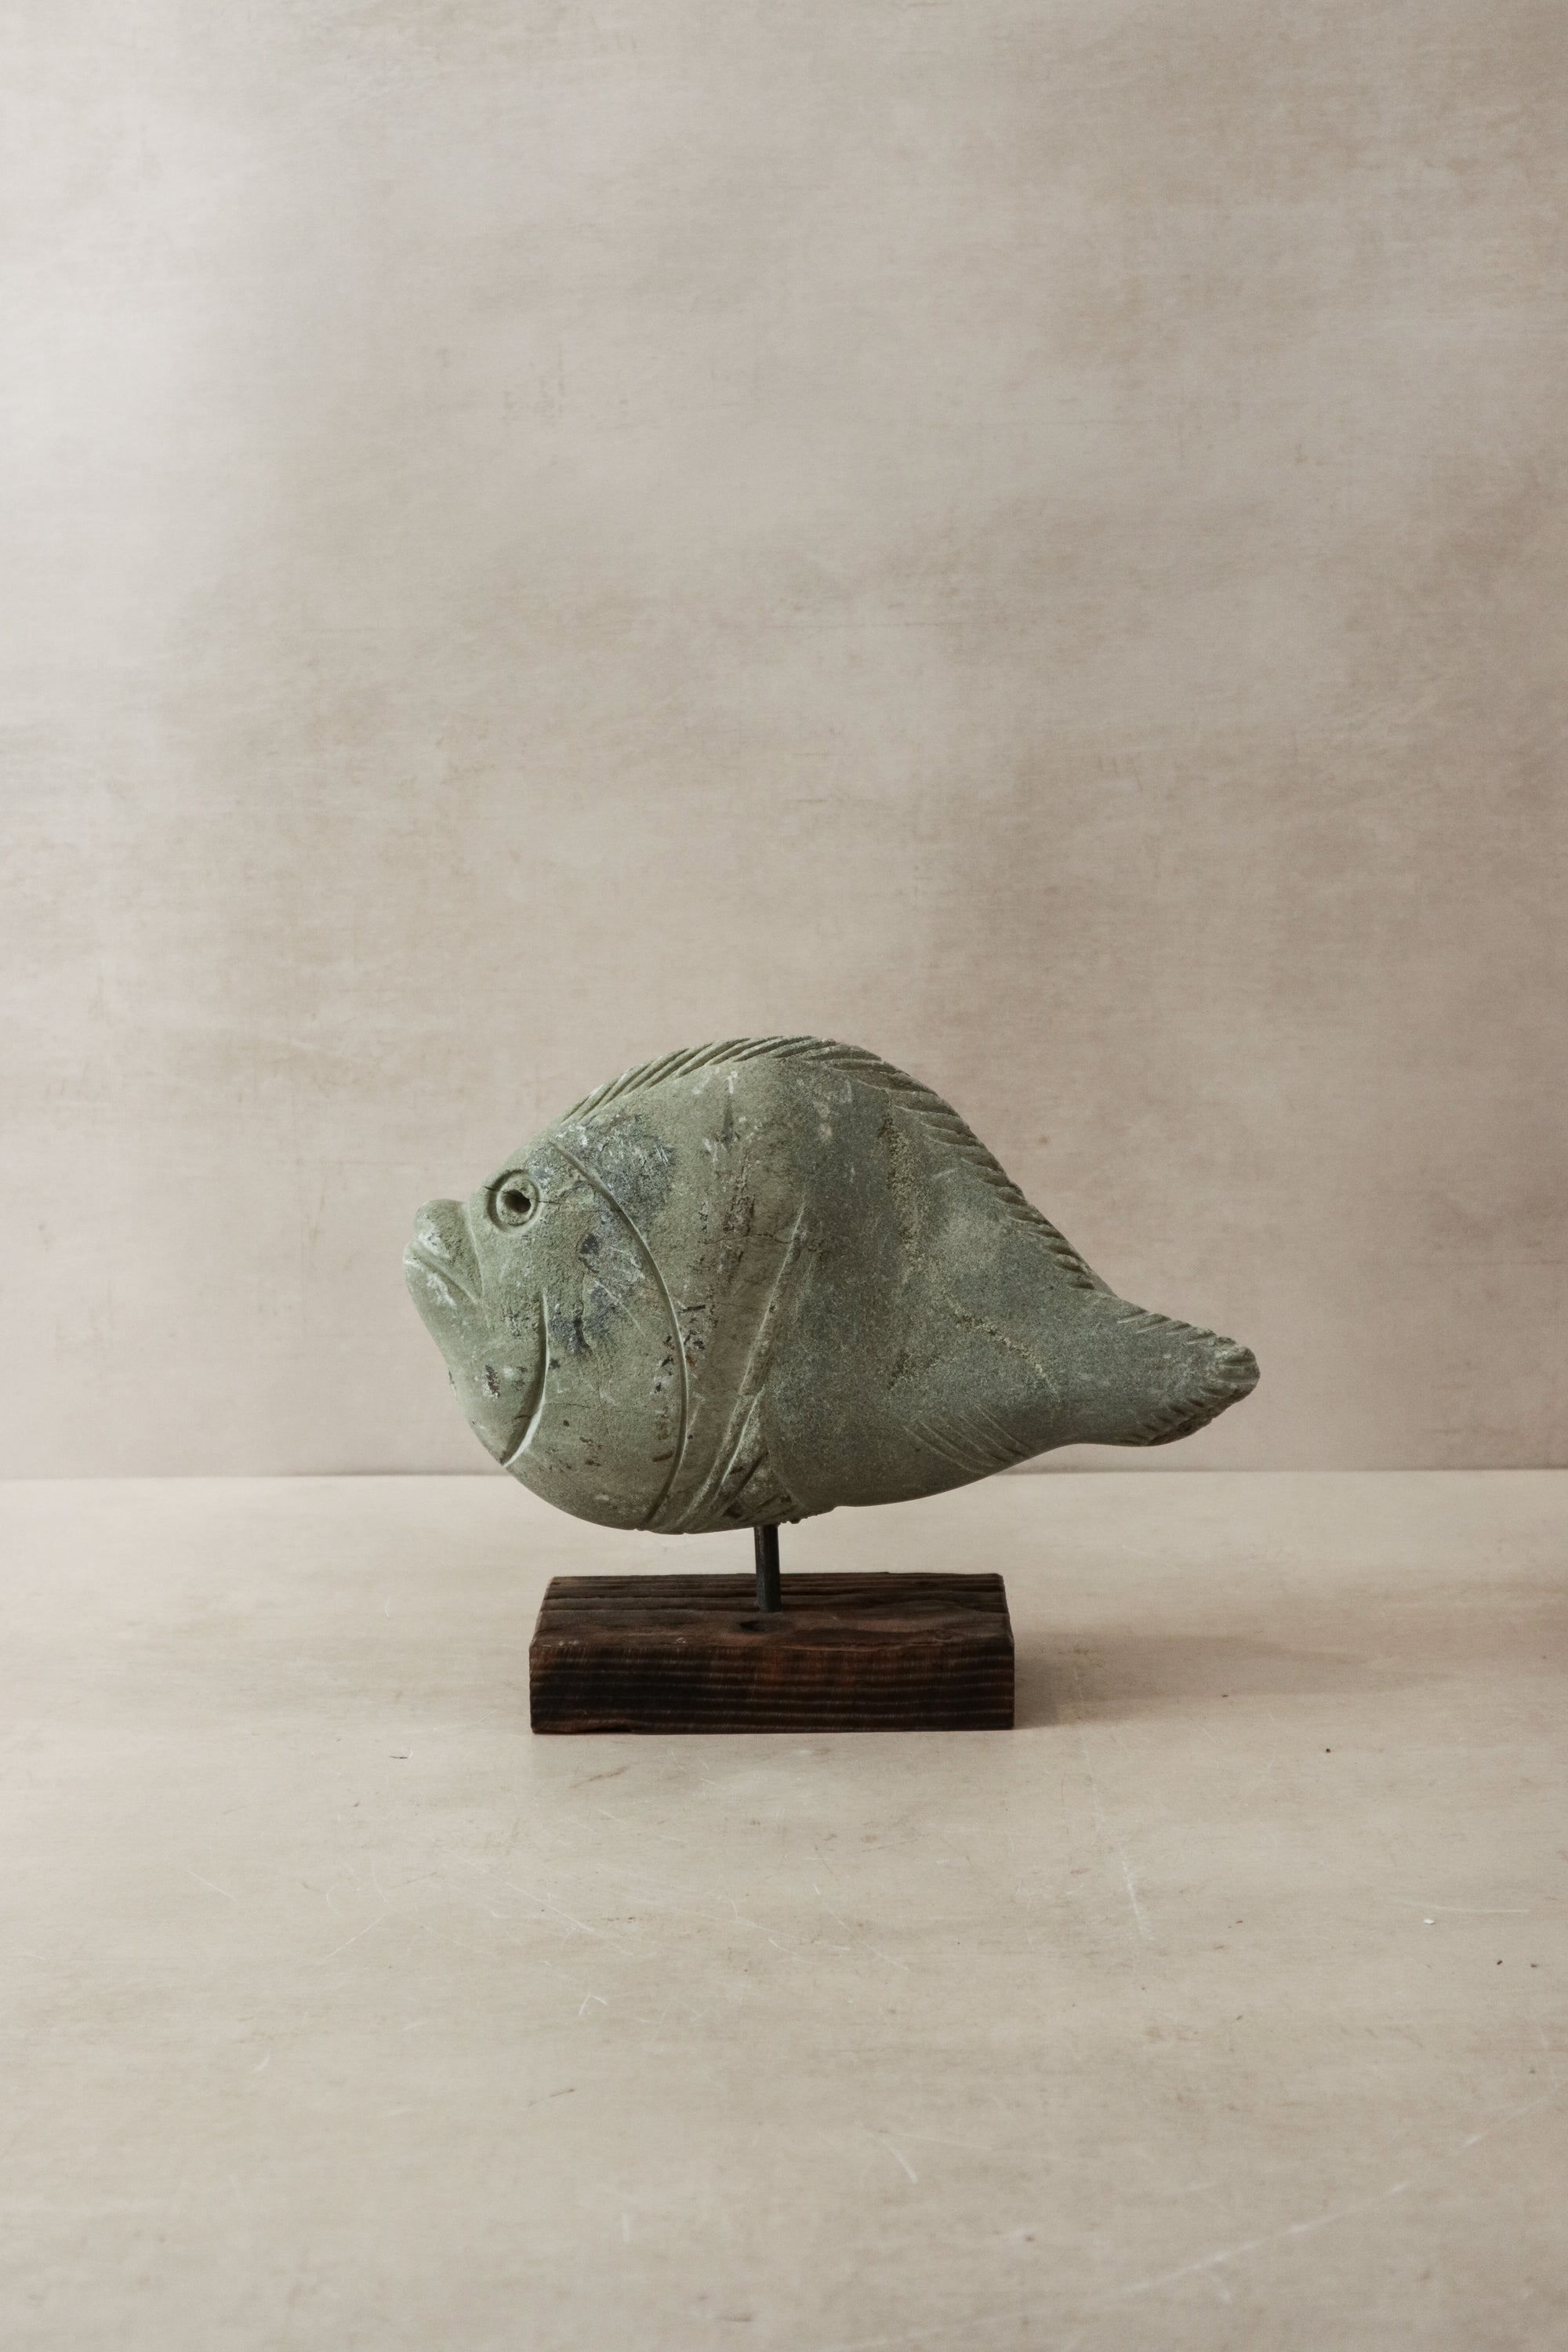 Stone Fish Sculpture - Zimbabwe - 31.3